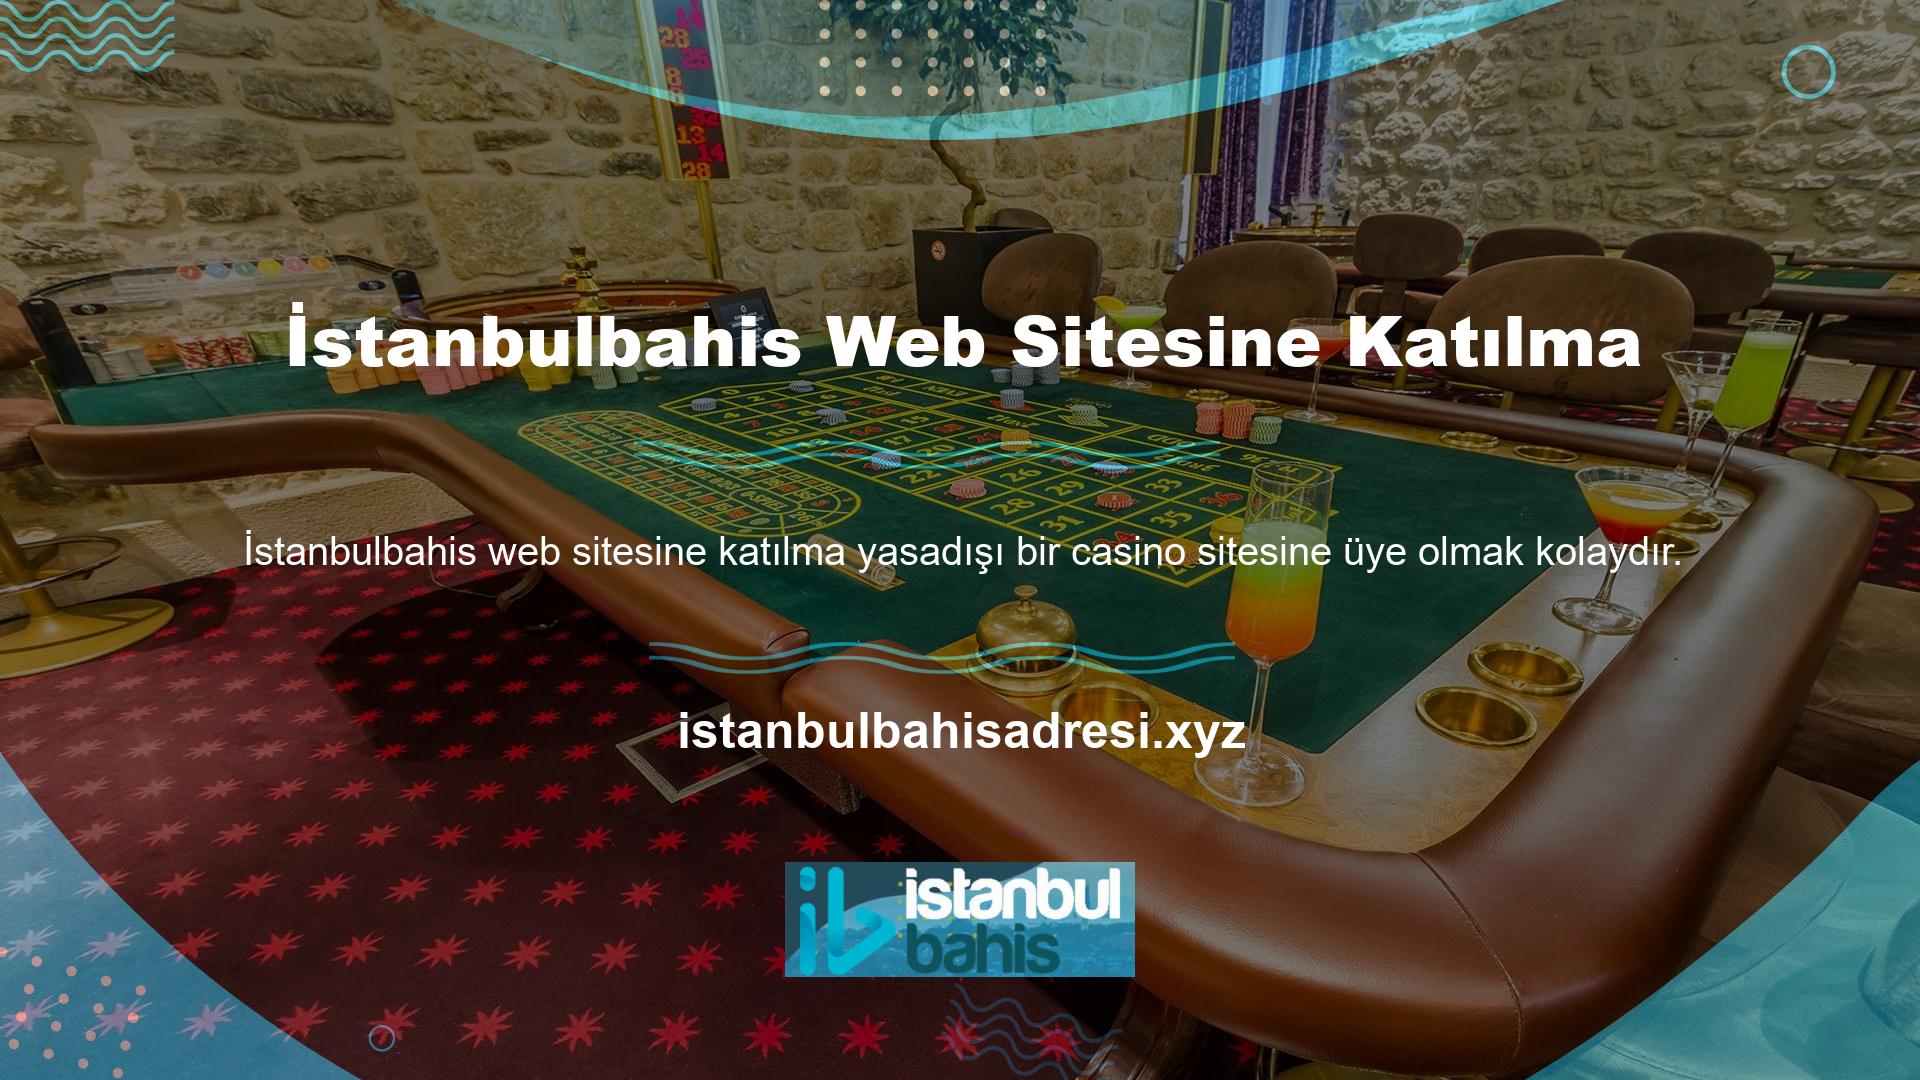 Yeni İstanbulbahis web sitesi adresine katılmak tamamen ücretsizdir